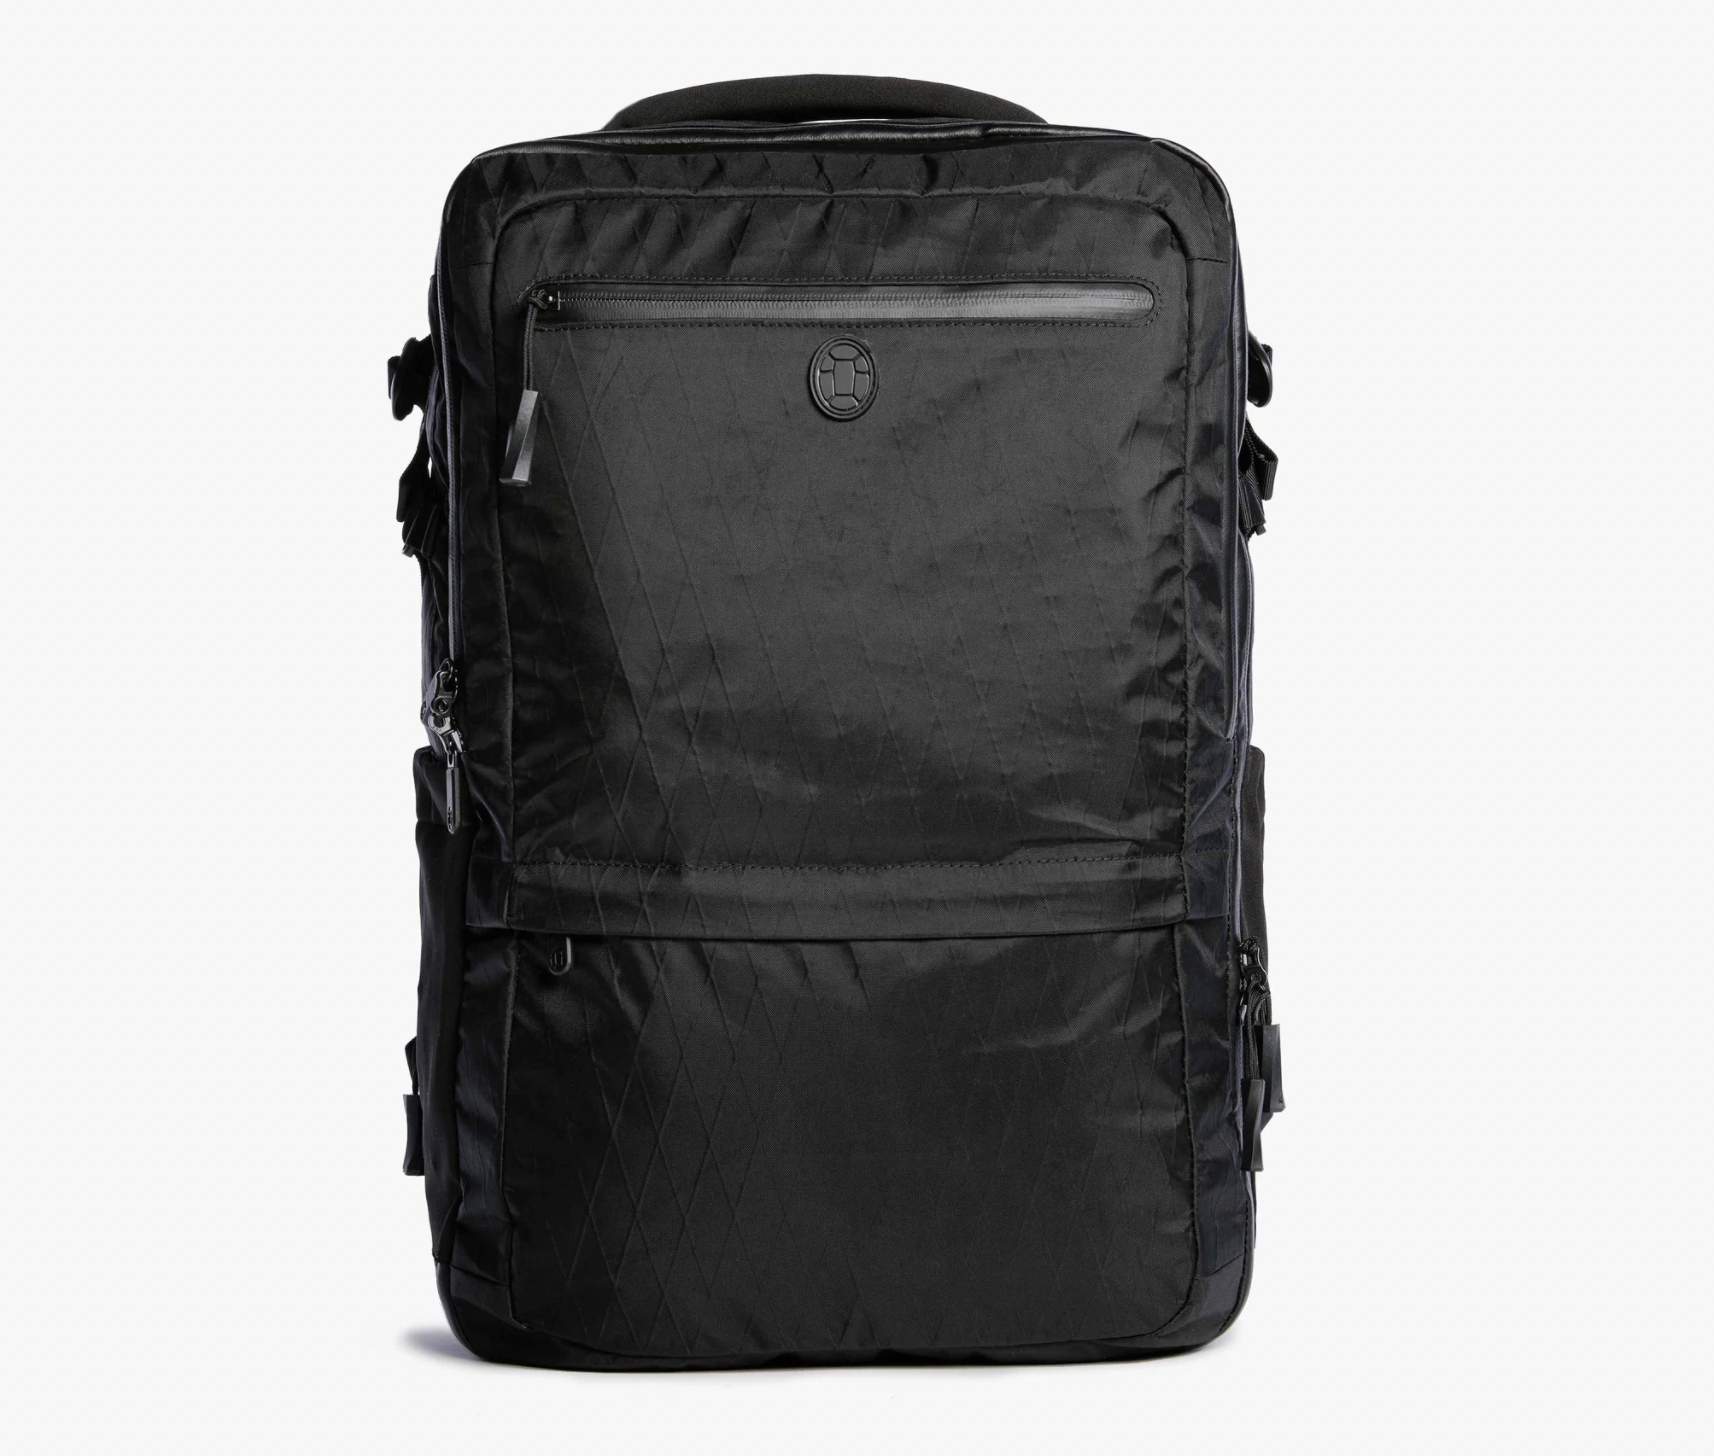 Onebag travel packing list